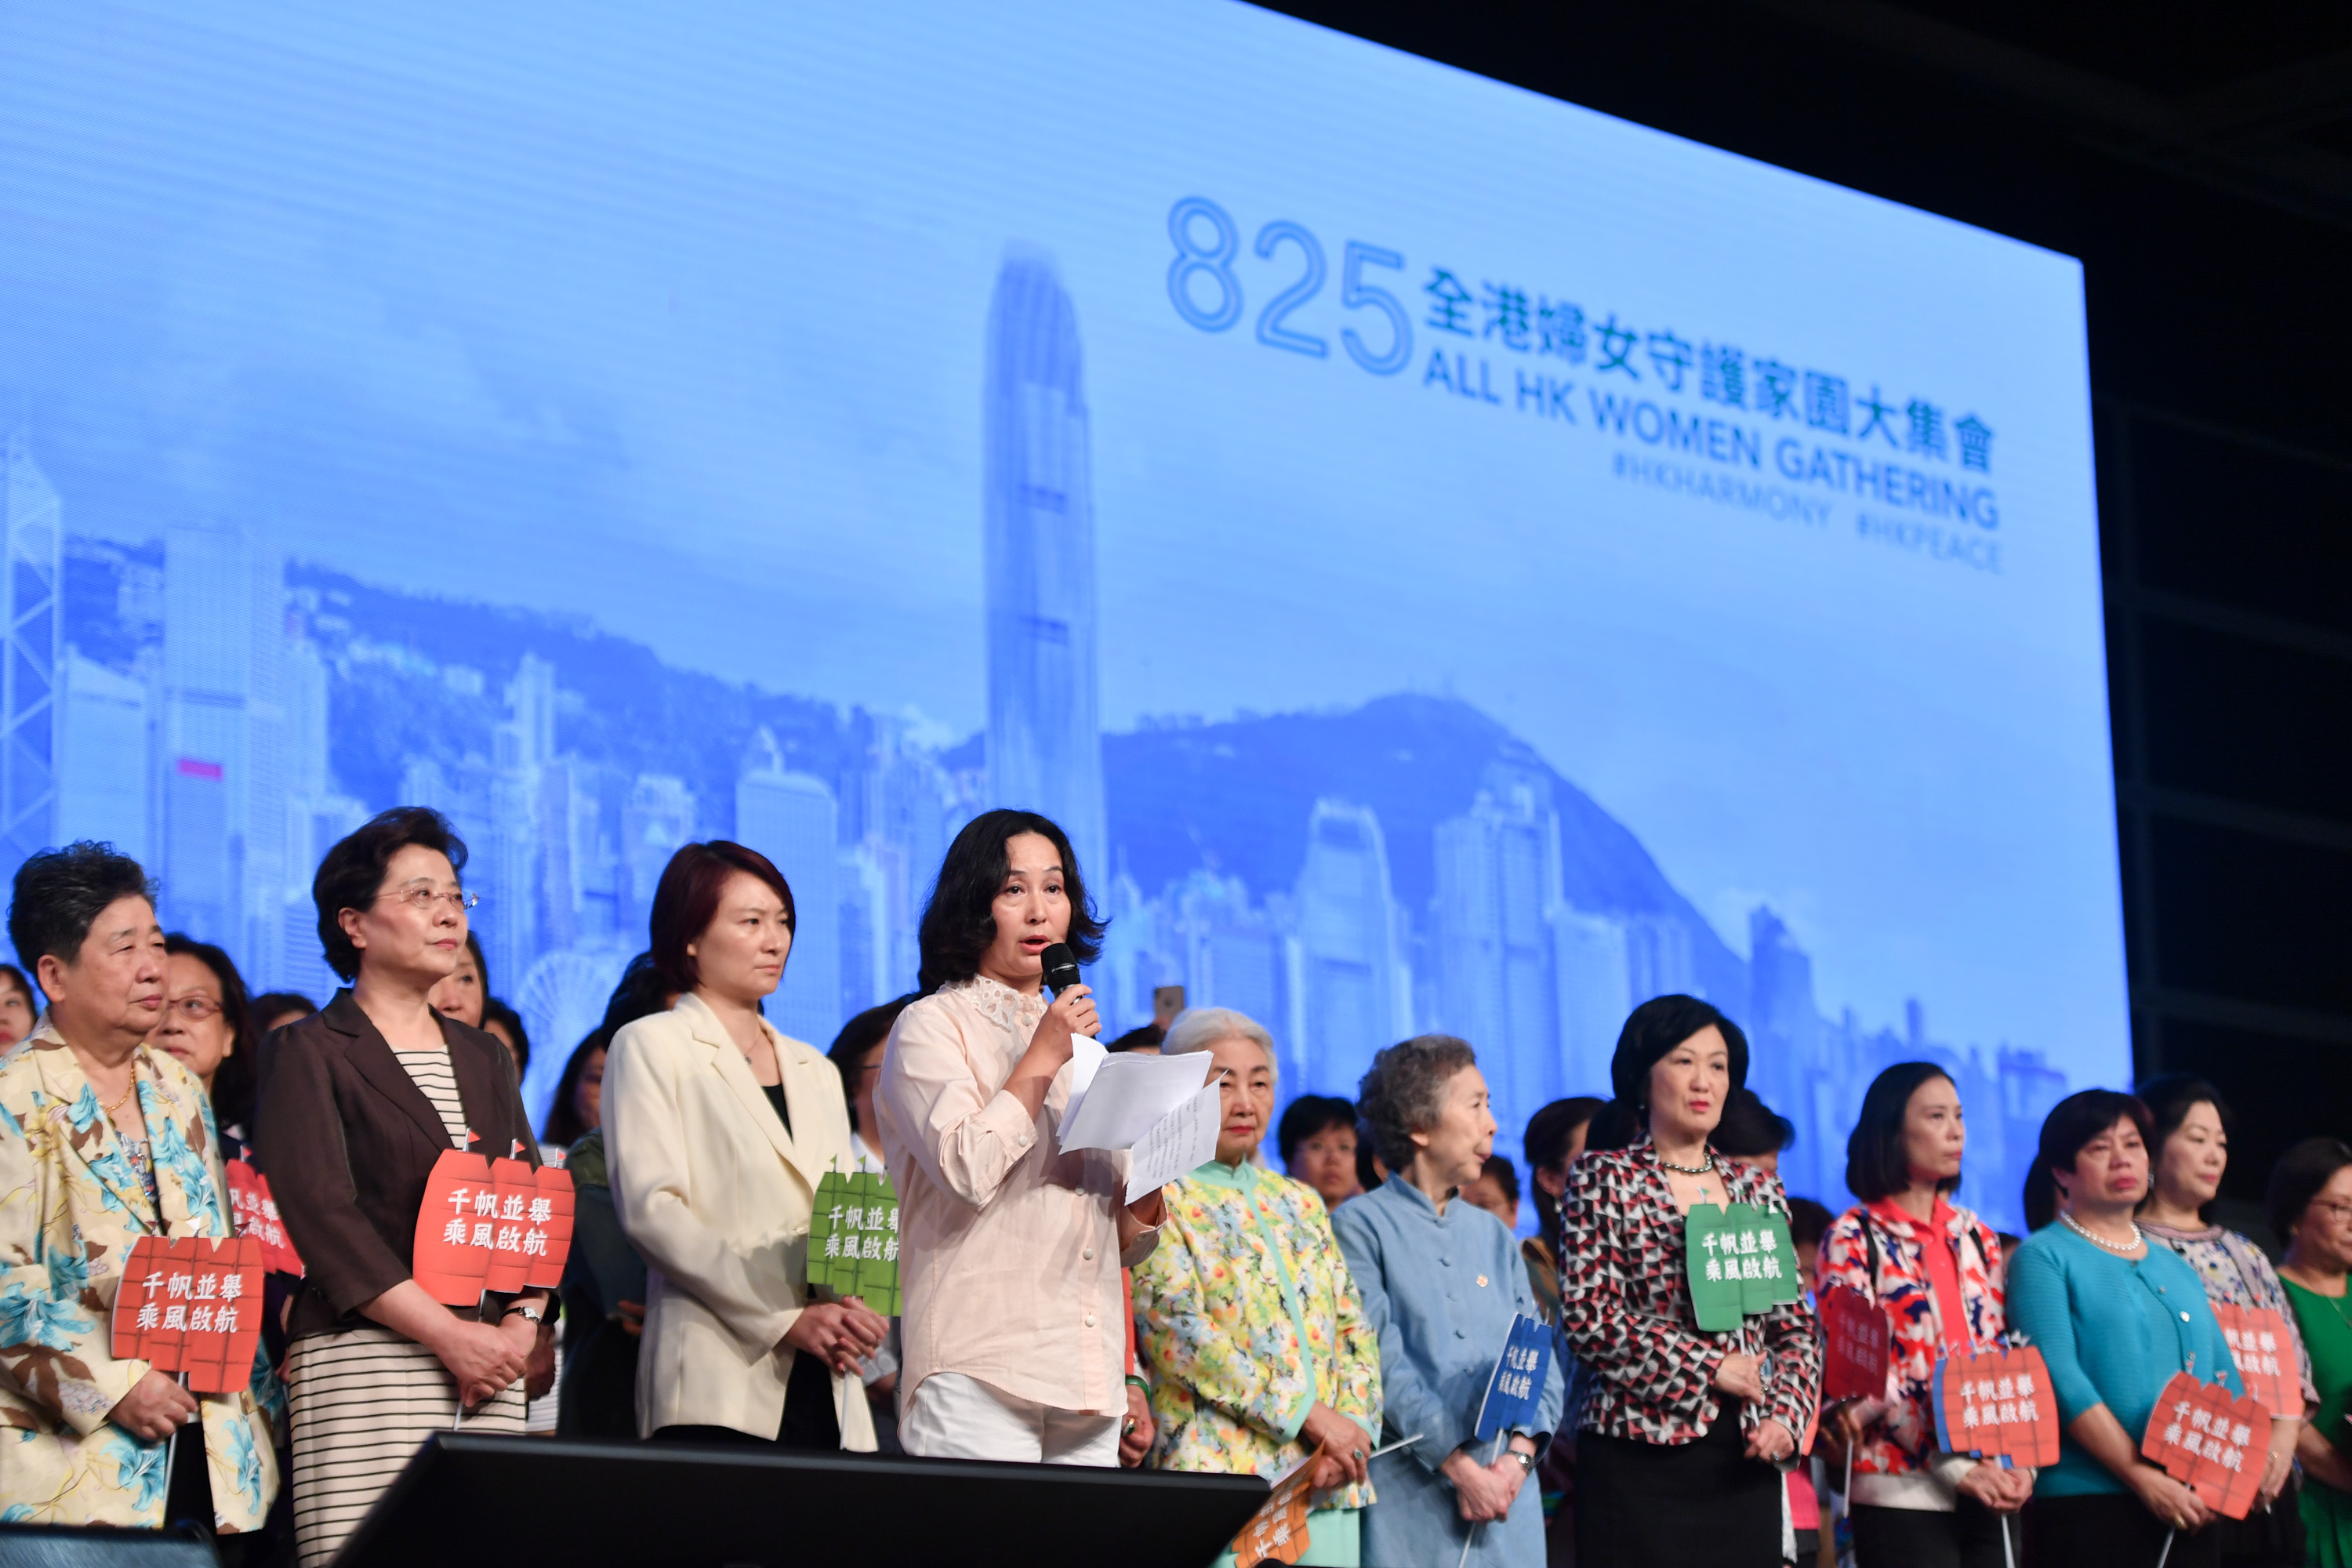 向暴力说 不 守护家园 来自全港妇女守护家园大集会的声音 香港